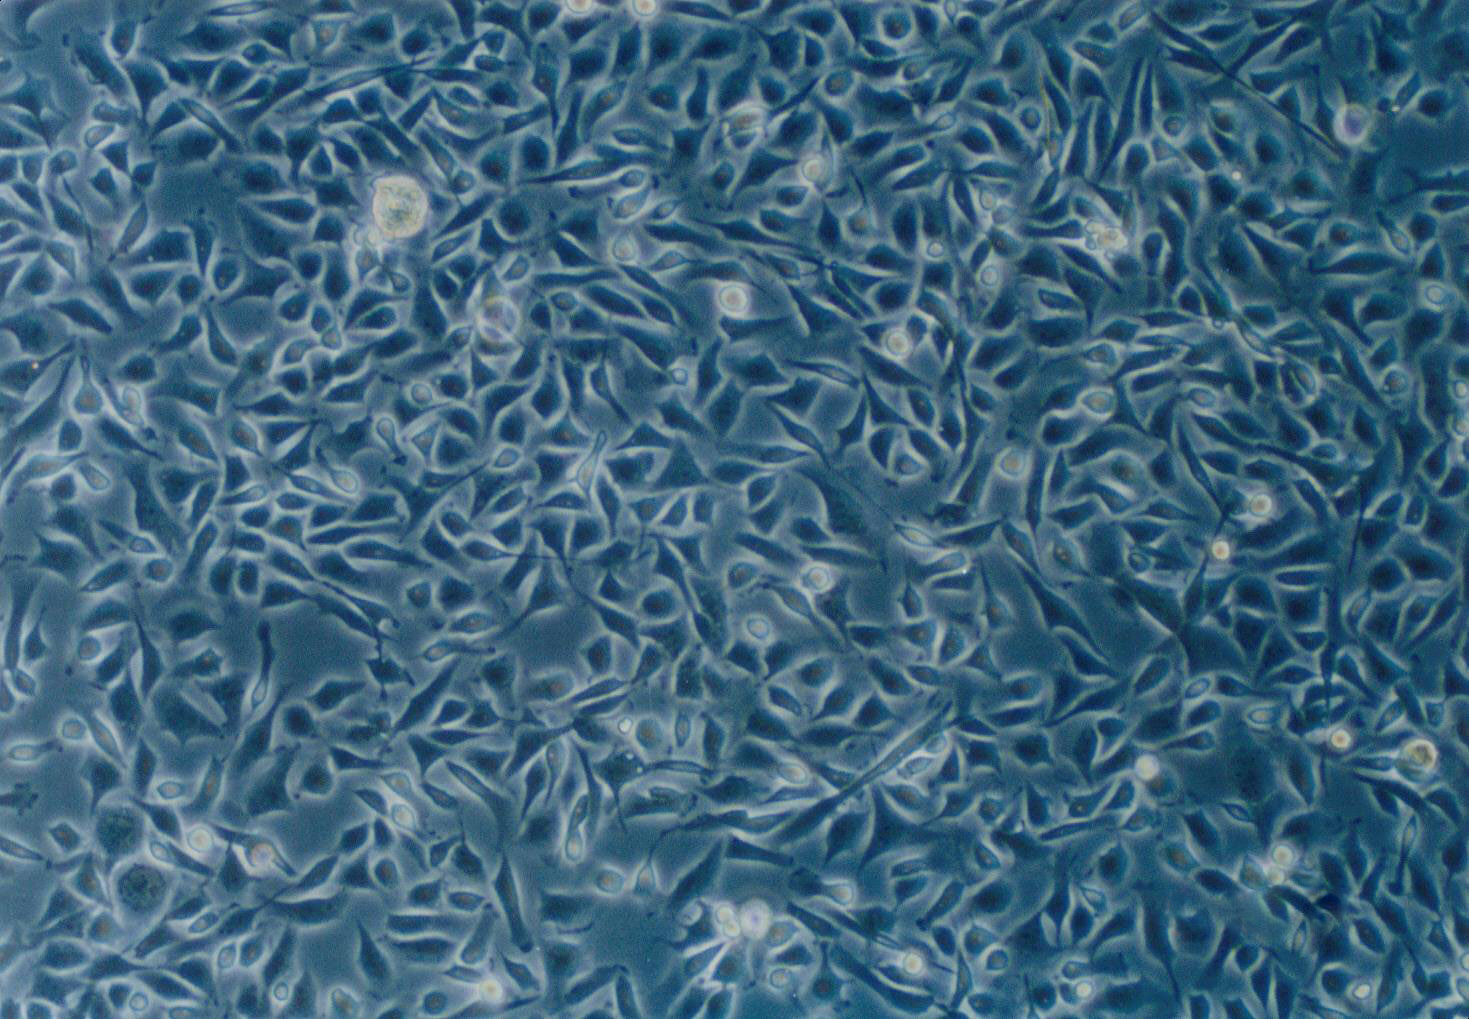 MCA-205 Cells(赠送Str鉴定报告)|小鼠纤维肉瘤细胞,MCA-205 Cells